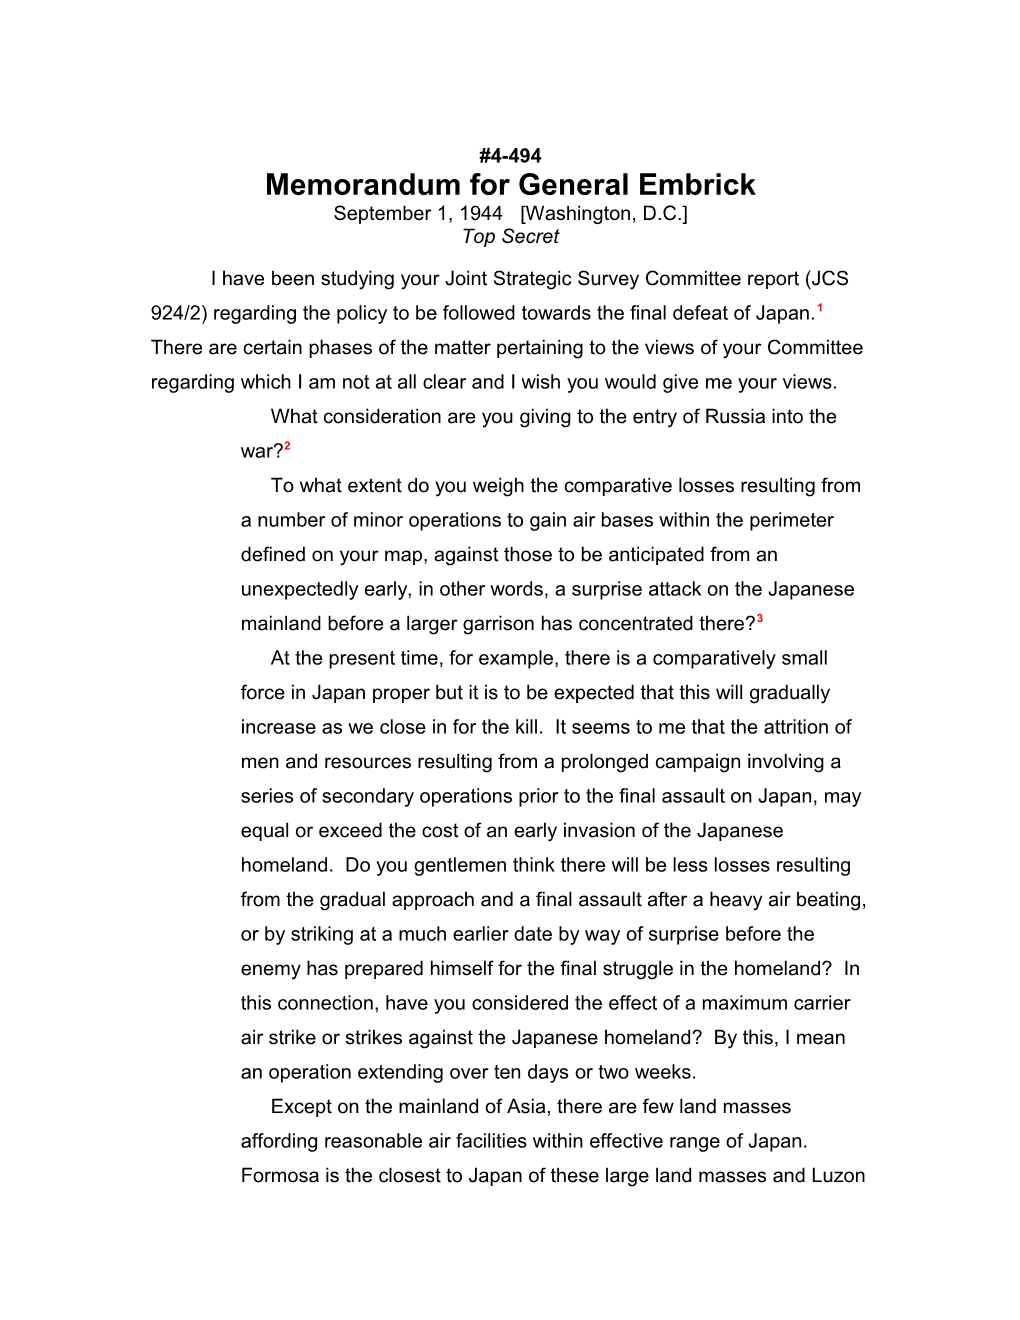 Memorandum for General Embrick